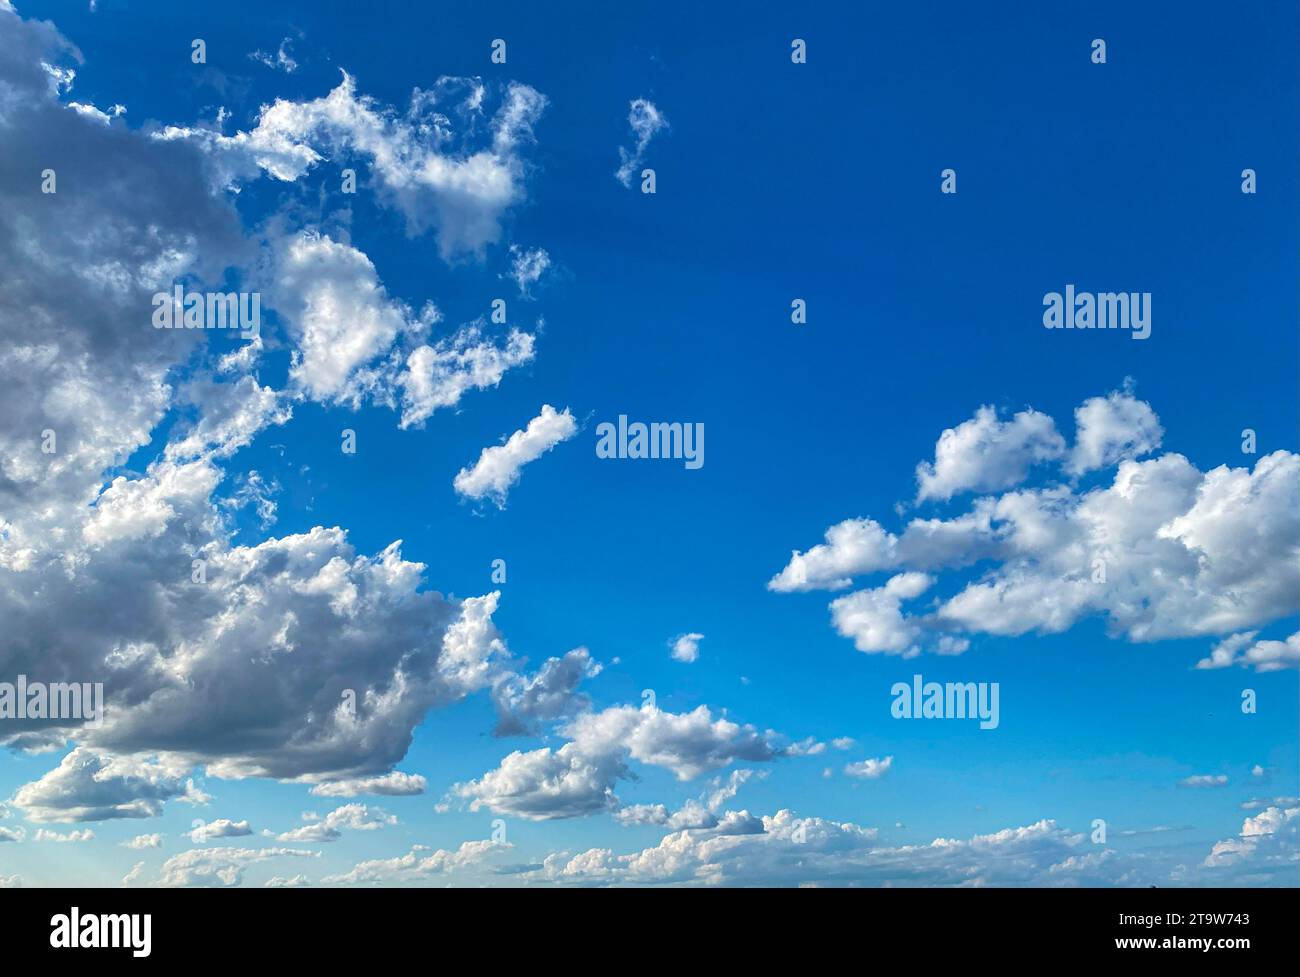 Un ciel bleu avec des nuages blancs au-dessus d'une baie d'eau. Banque D'Images